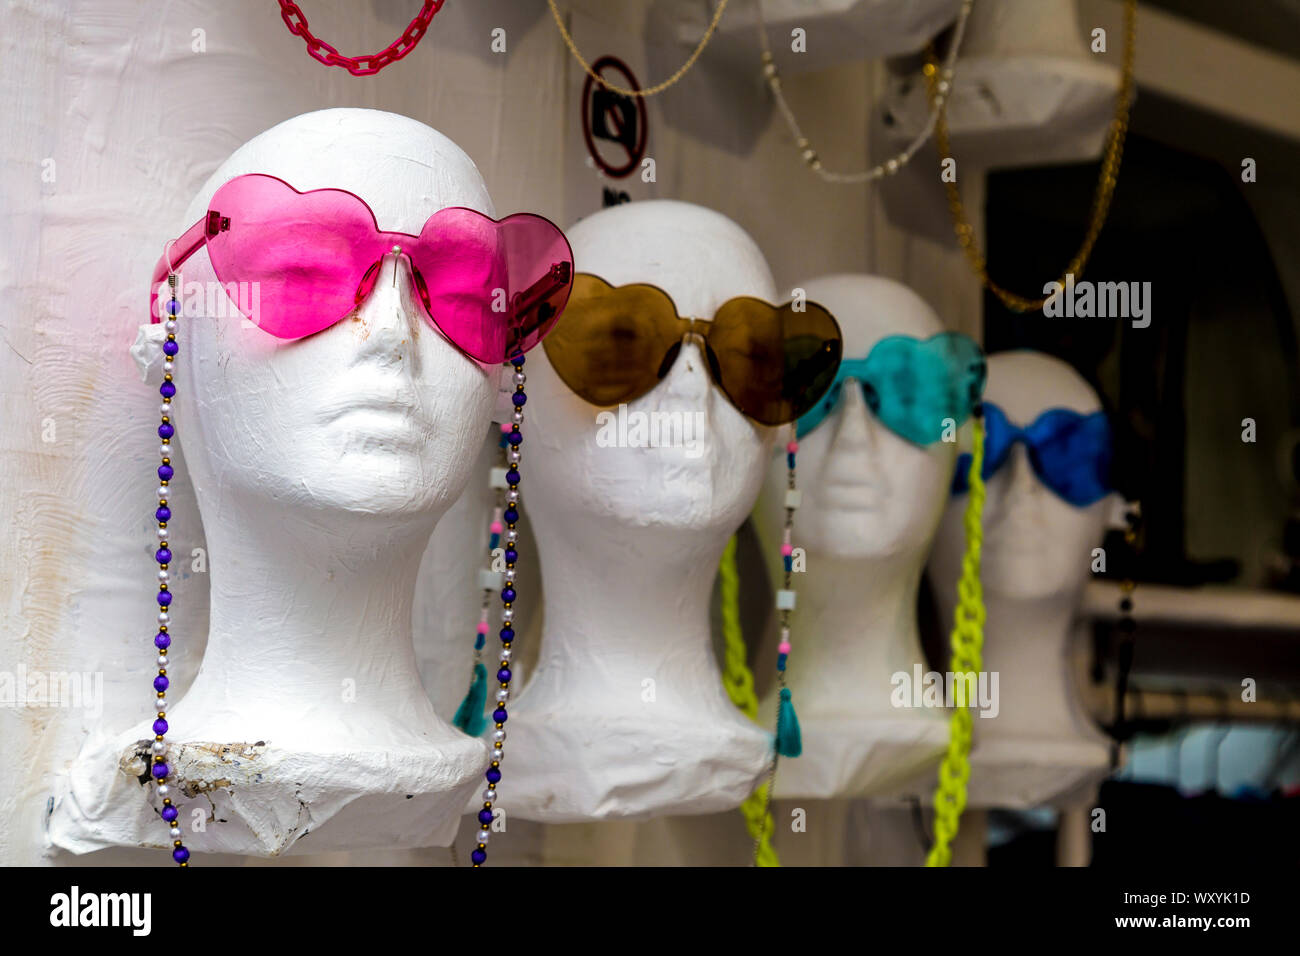 Tienda de souvenirs, maniqui jefes ropas coloridas gafas de sol con forma de corazón en Dalt Vila, Ibiza, España Foto de stock